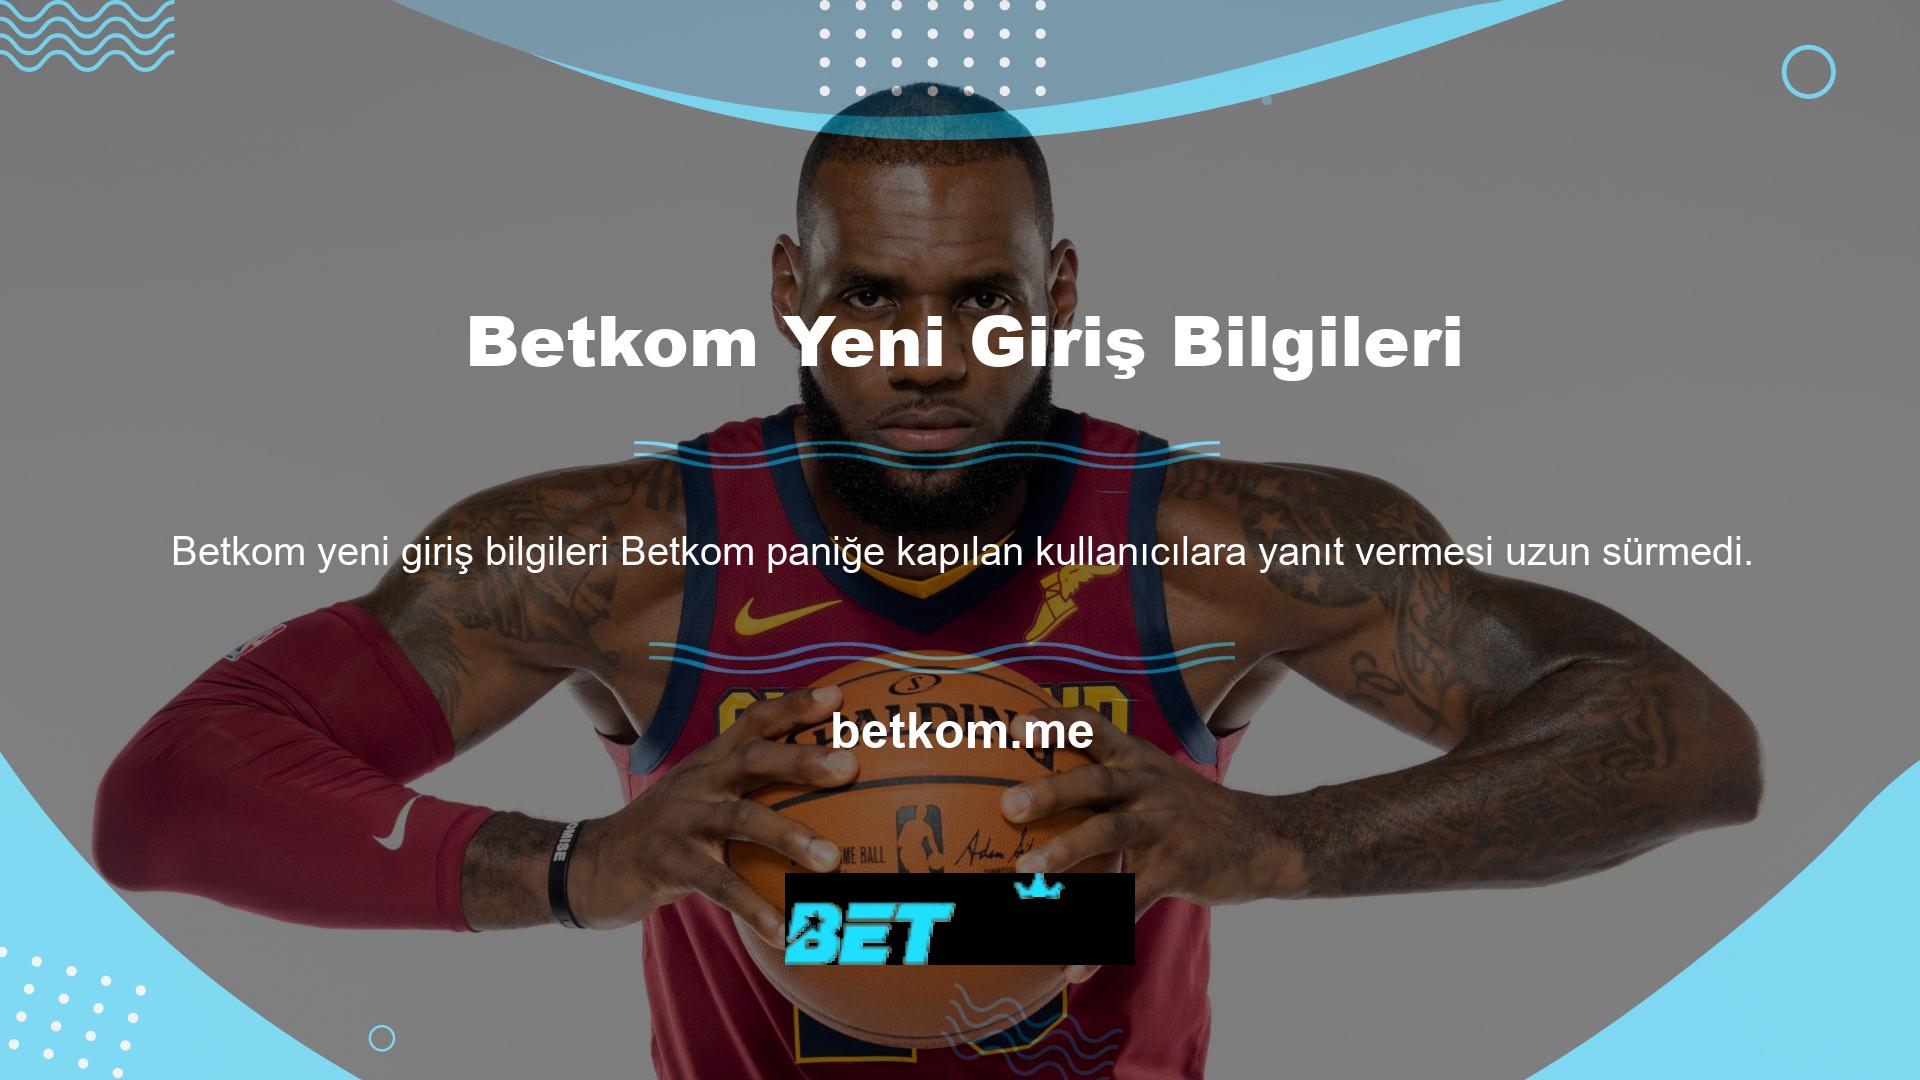 Betkom web sitesinde hızlı erişim için Twitter ve Betkom şikayet bölümü bulunmaktadır